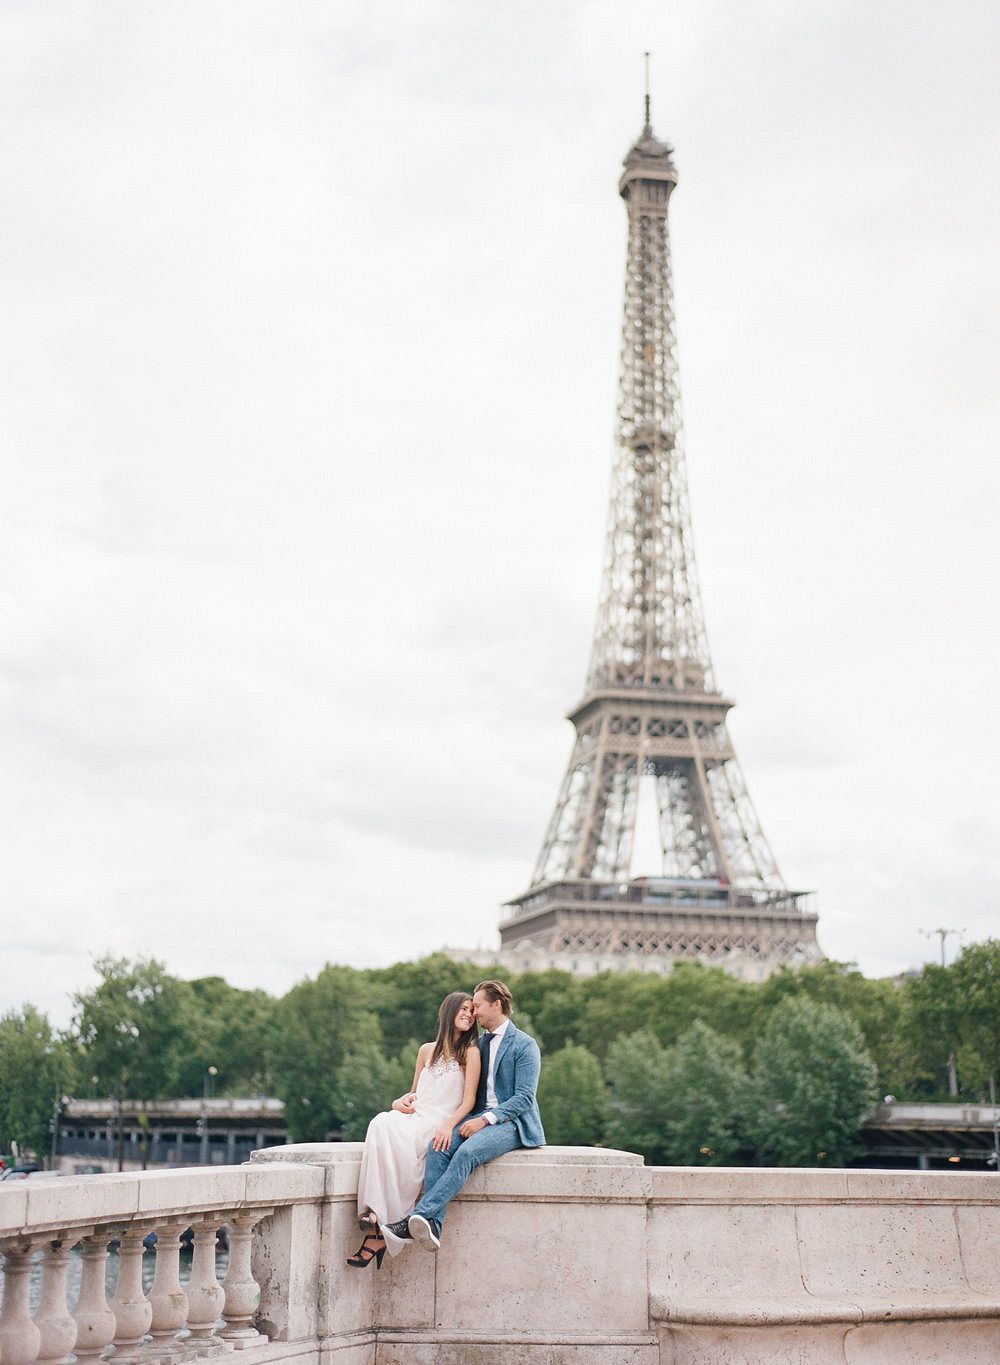 A Parisian couples' session